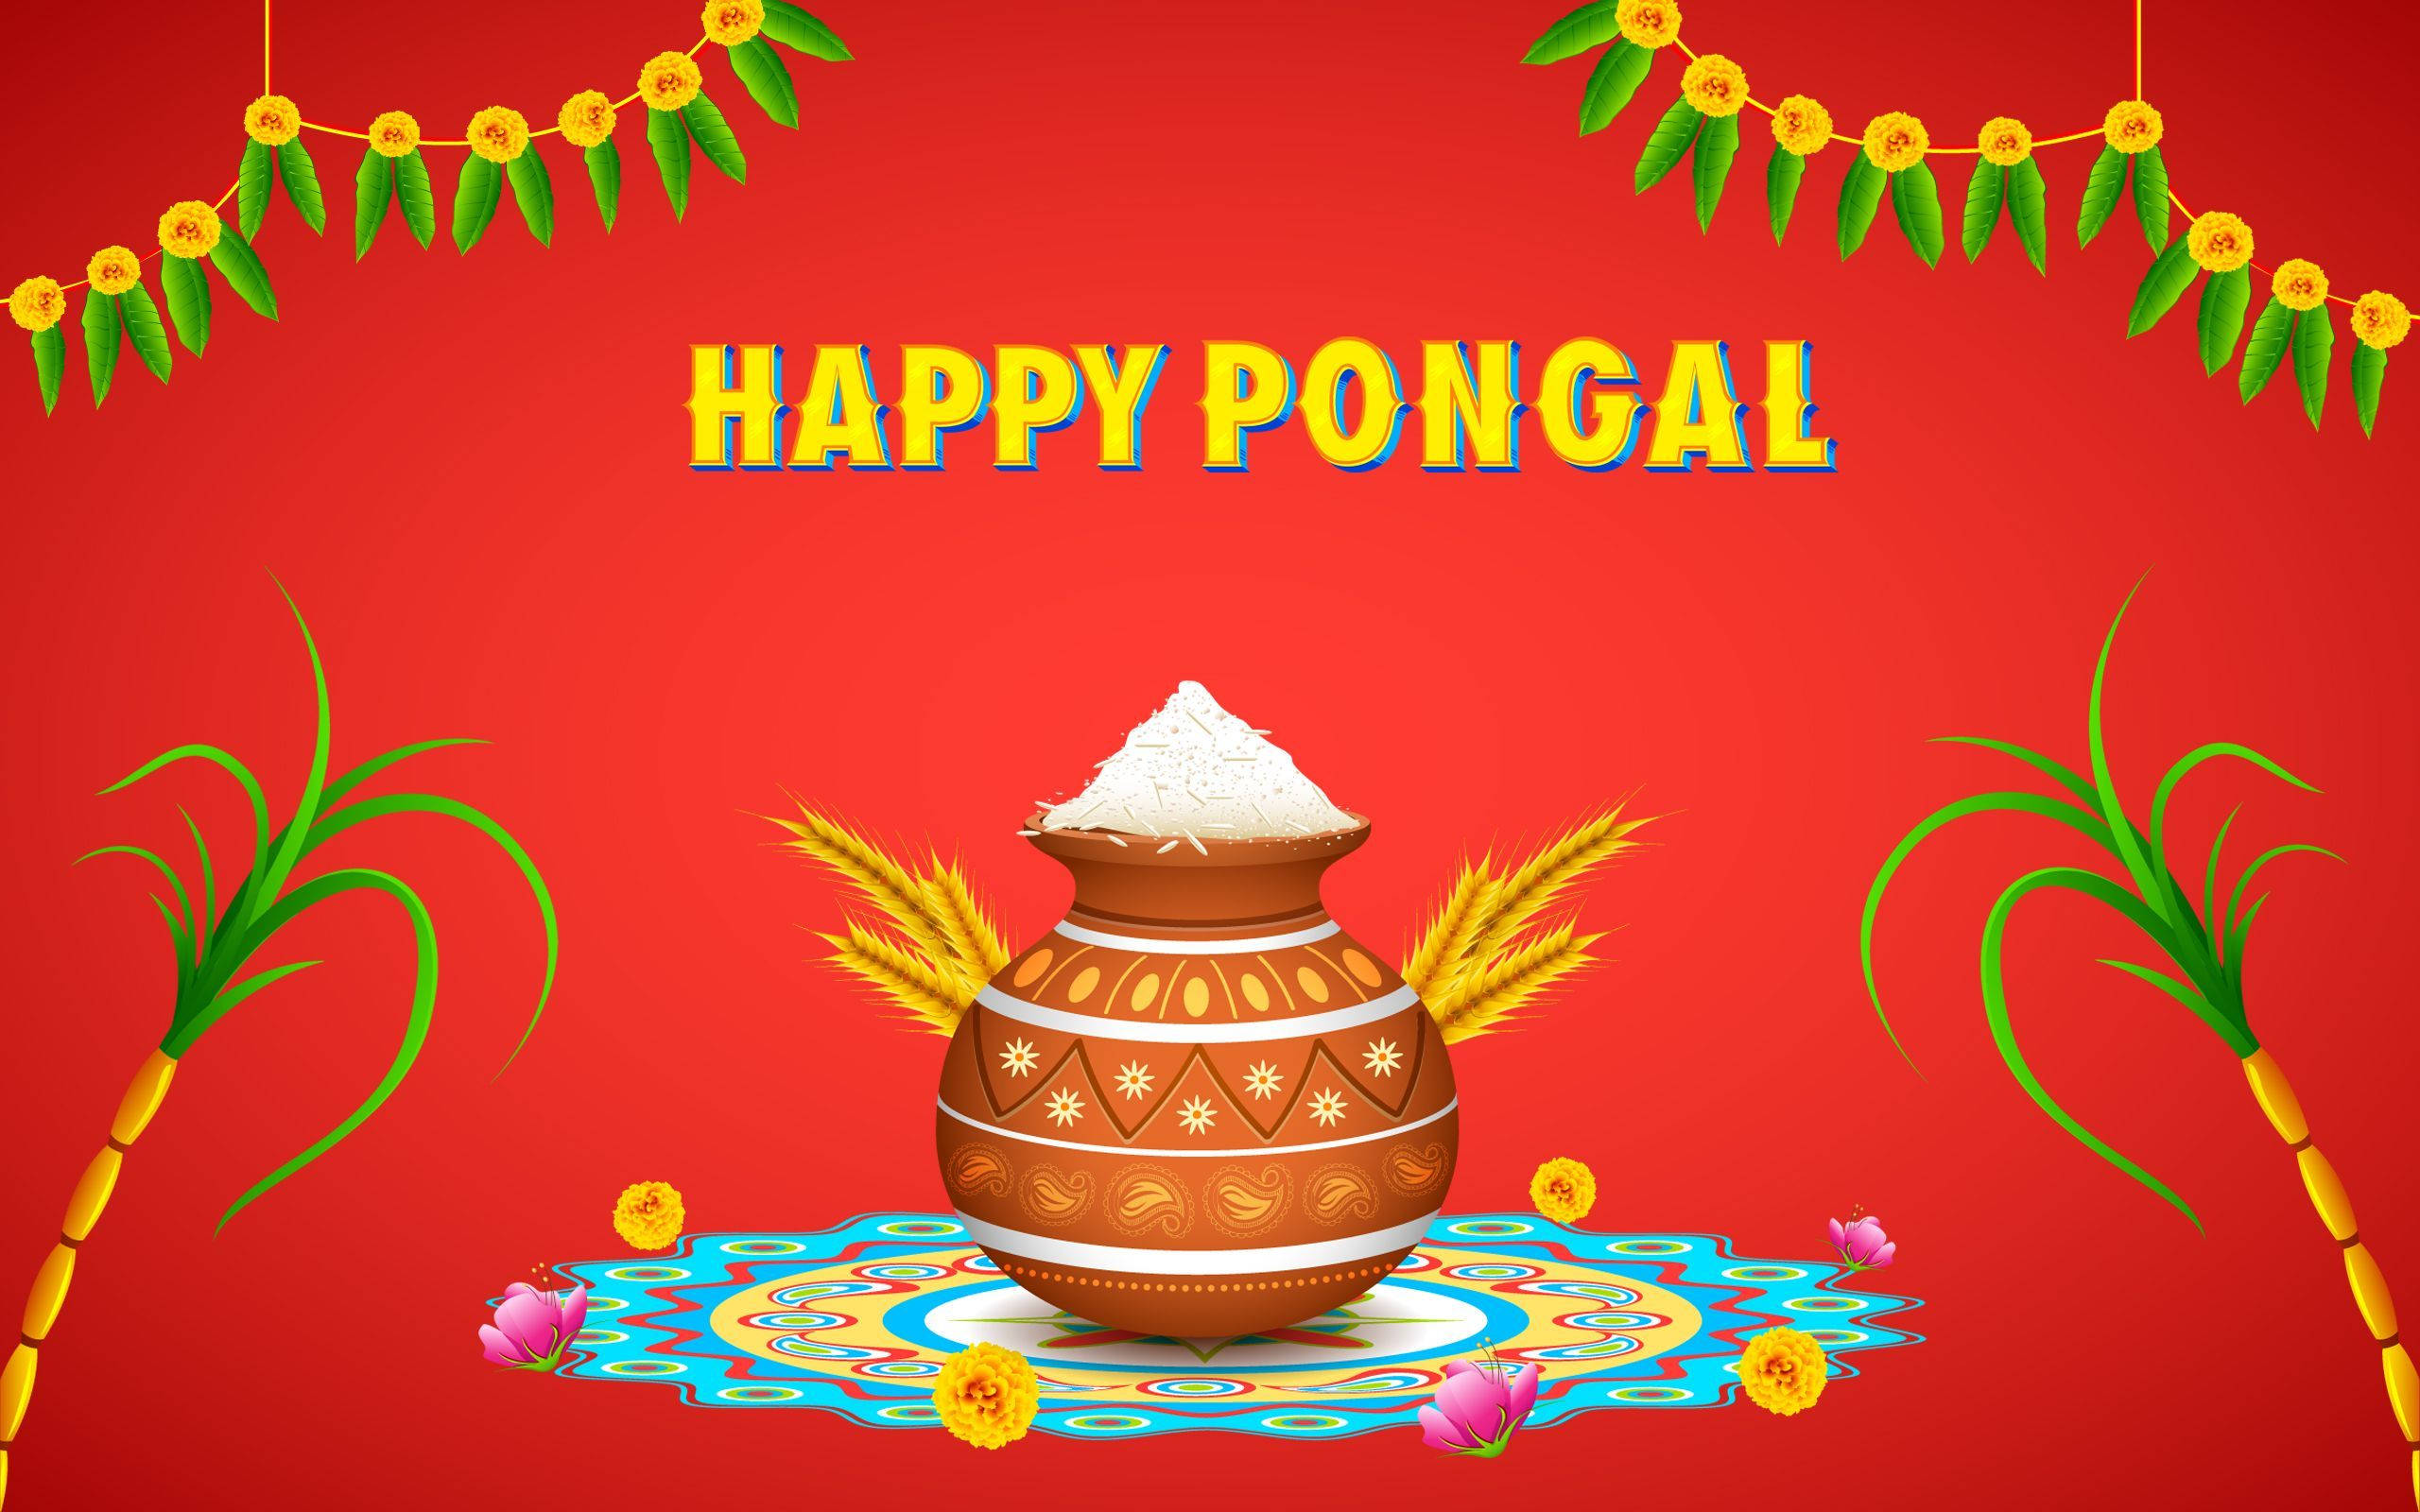 Tải xuống hình nền chúc mừng Pongal: Hình nền chúc mừng Pongal sẽ khiến cho màn hình điện thoại của bạn trở nên sinh động và phong phú hơn bao giờ hết. Hãy tải xuống ngay!